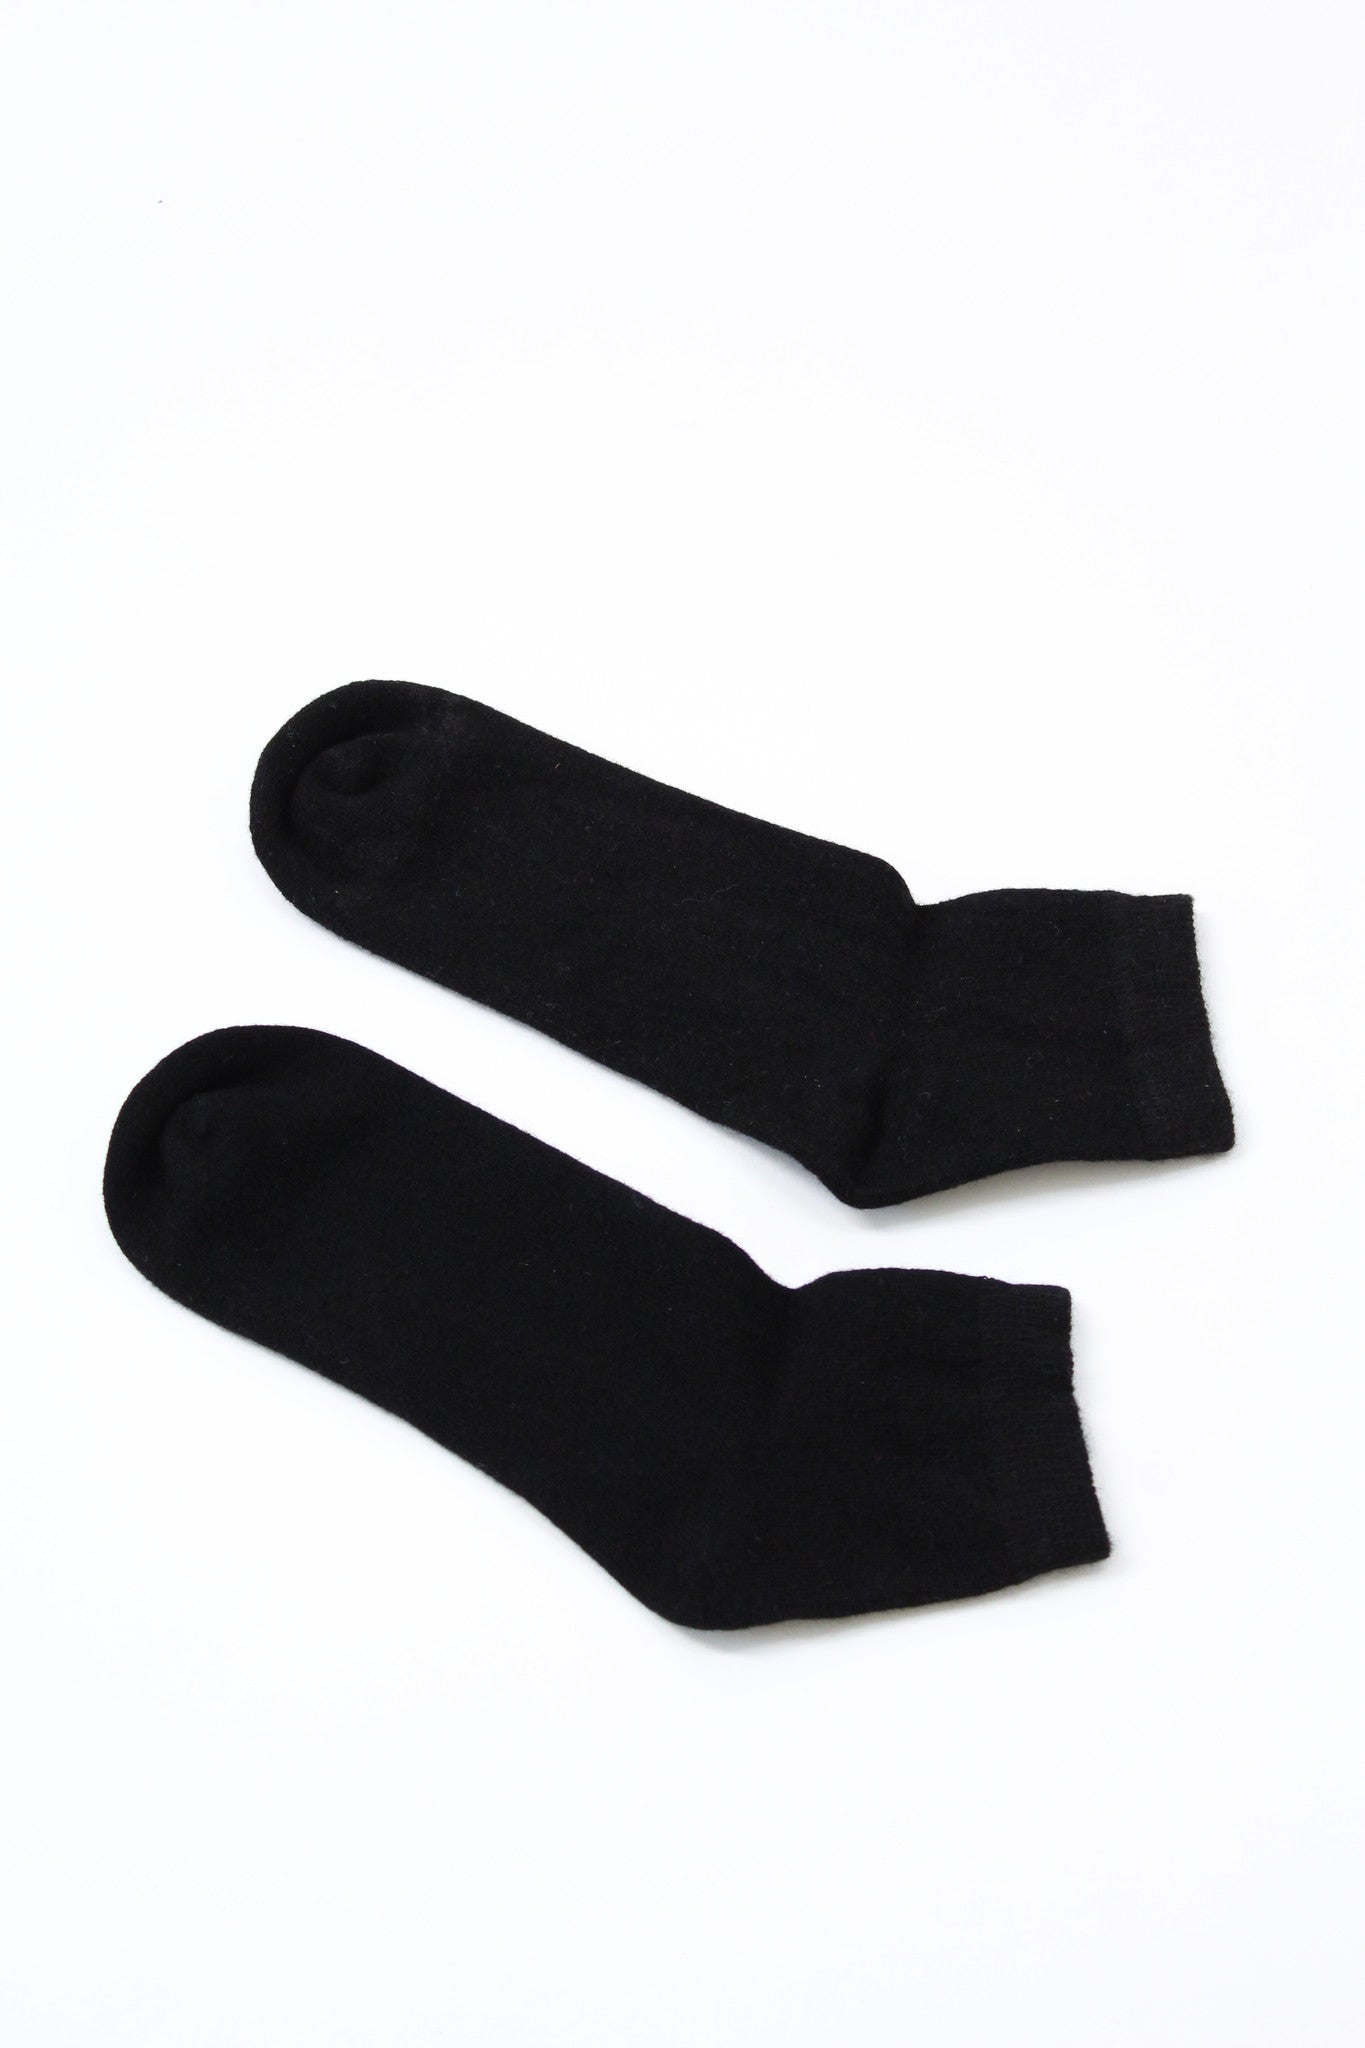 Beklina Cashmere Socks Black